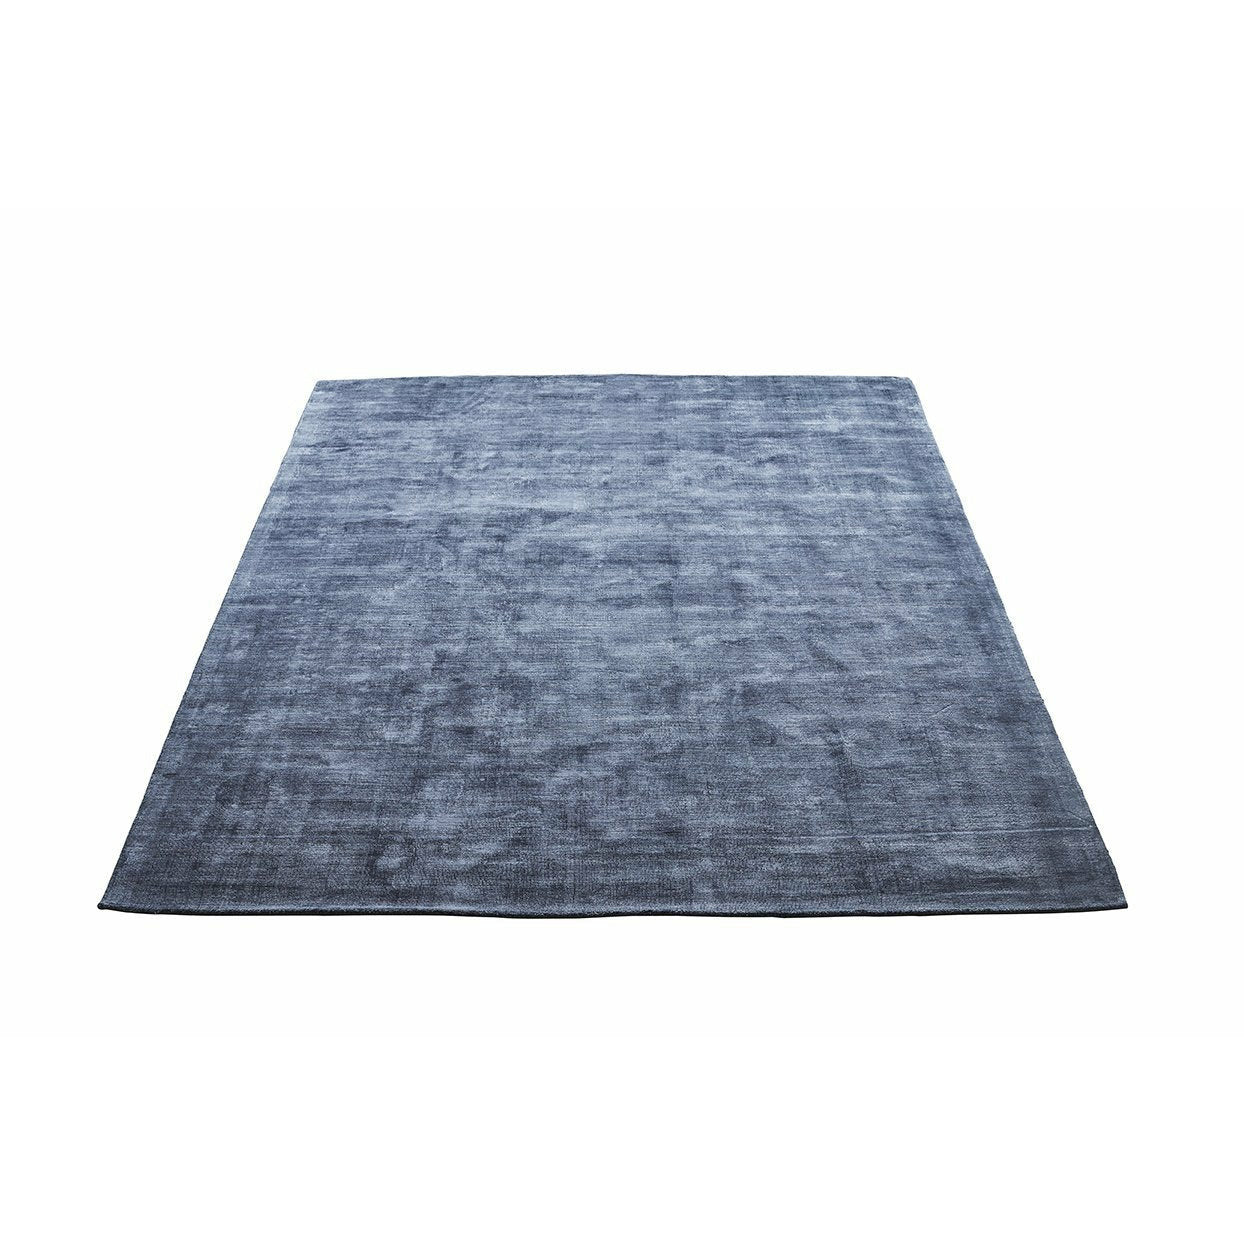 Massimo Karma matta tvättat blått, 160x230 cm